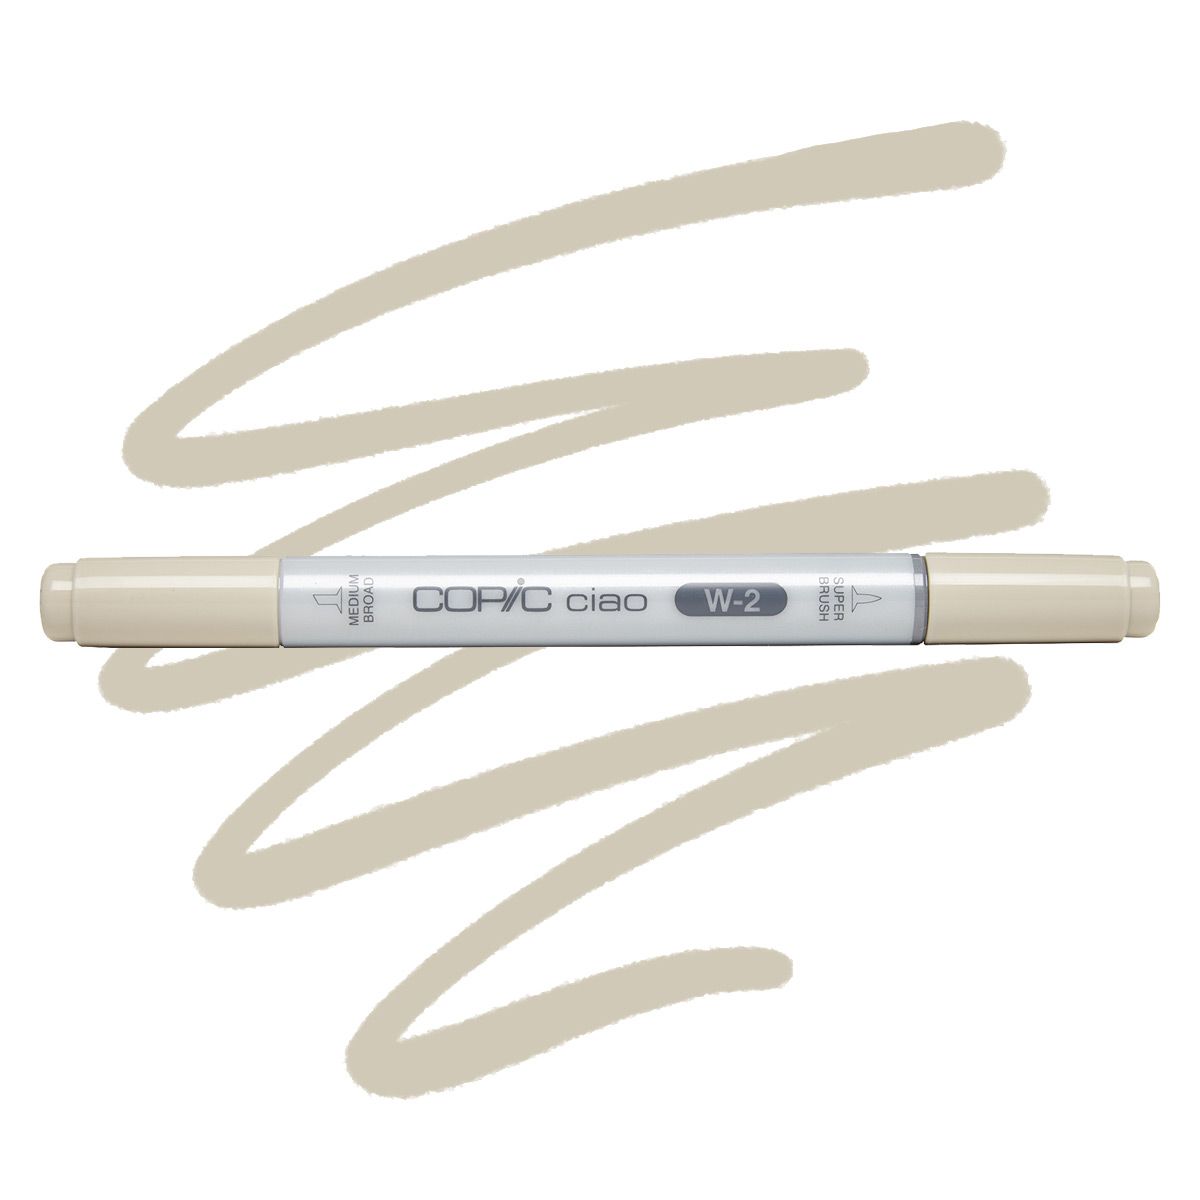 COPIC Ciao Marker W2 - Warm Gray 2